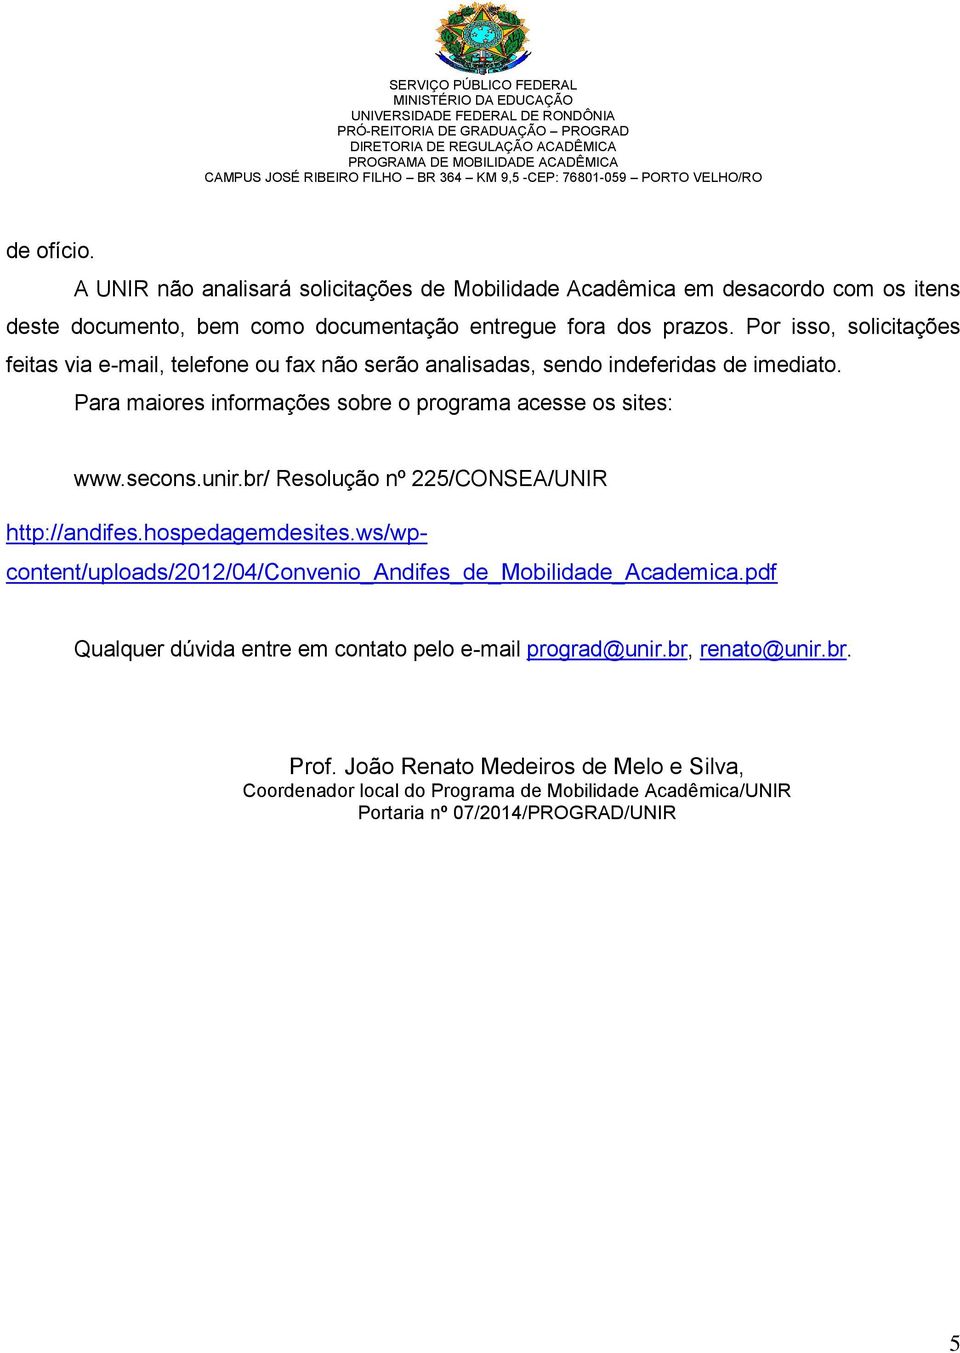 secons.unir.br/ Resolução nº 225/CONSEA/UNIR http://andifes.hospedagemdesites.ws/wpcontent/uploads/2012/04/convenio_andifes_de_mobilidade_academica.